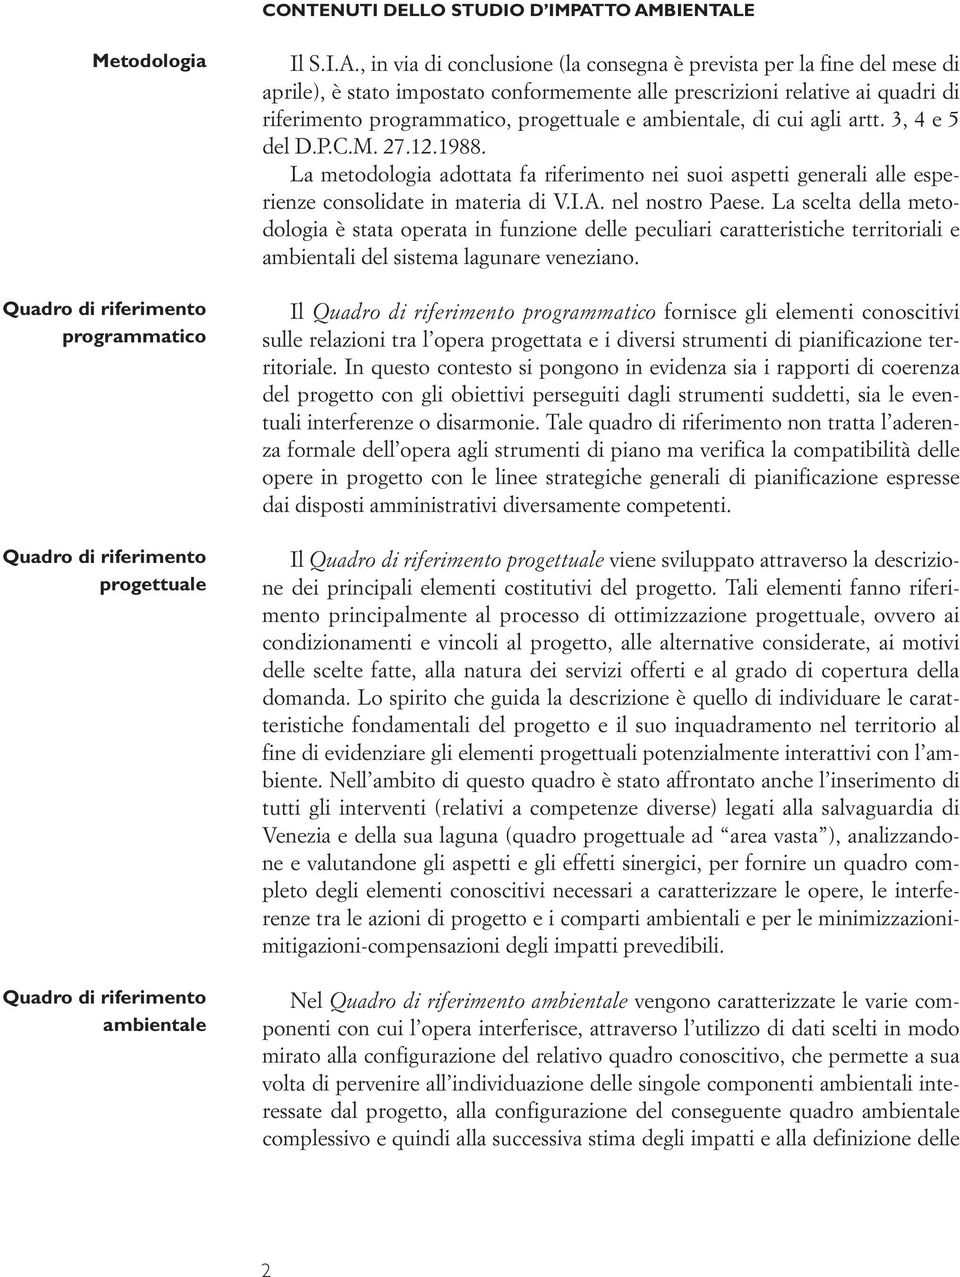 prescrizioni relative ai quadri di riferimento programmatico, progettuale e ambientale, di cui agli artt. 3, 4 e 5 del D.P.C.M. 27.12.1988.